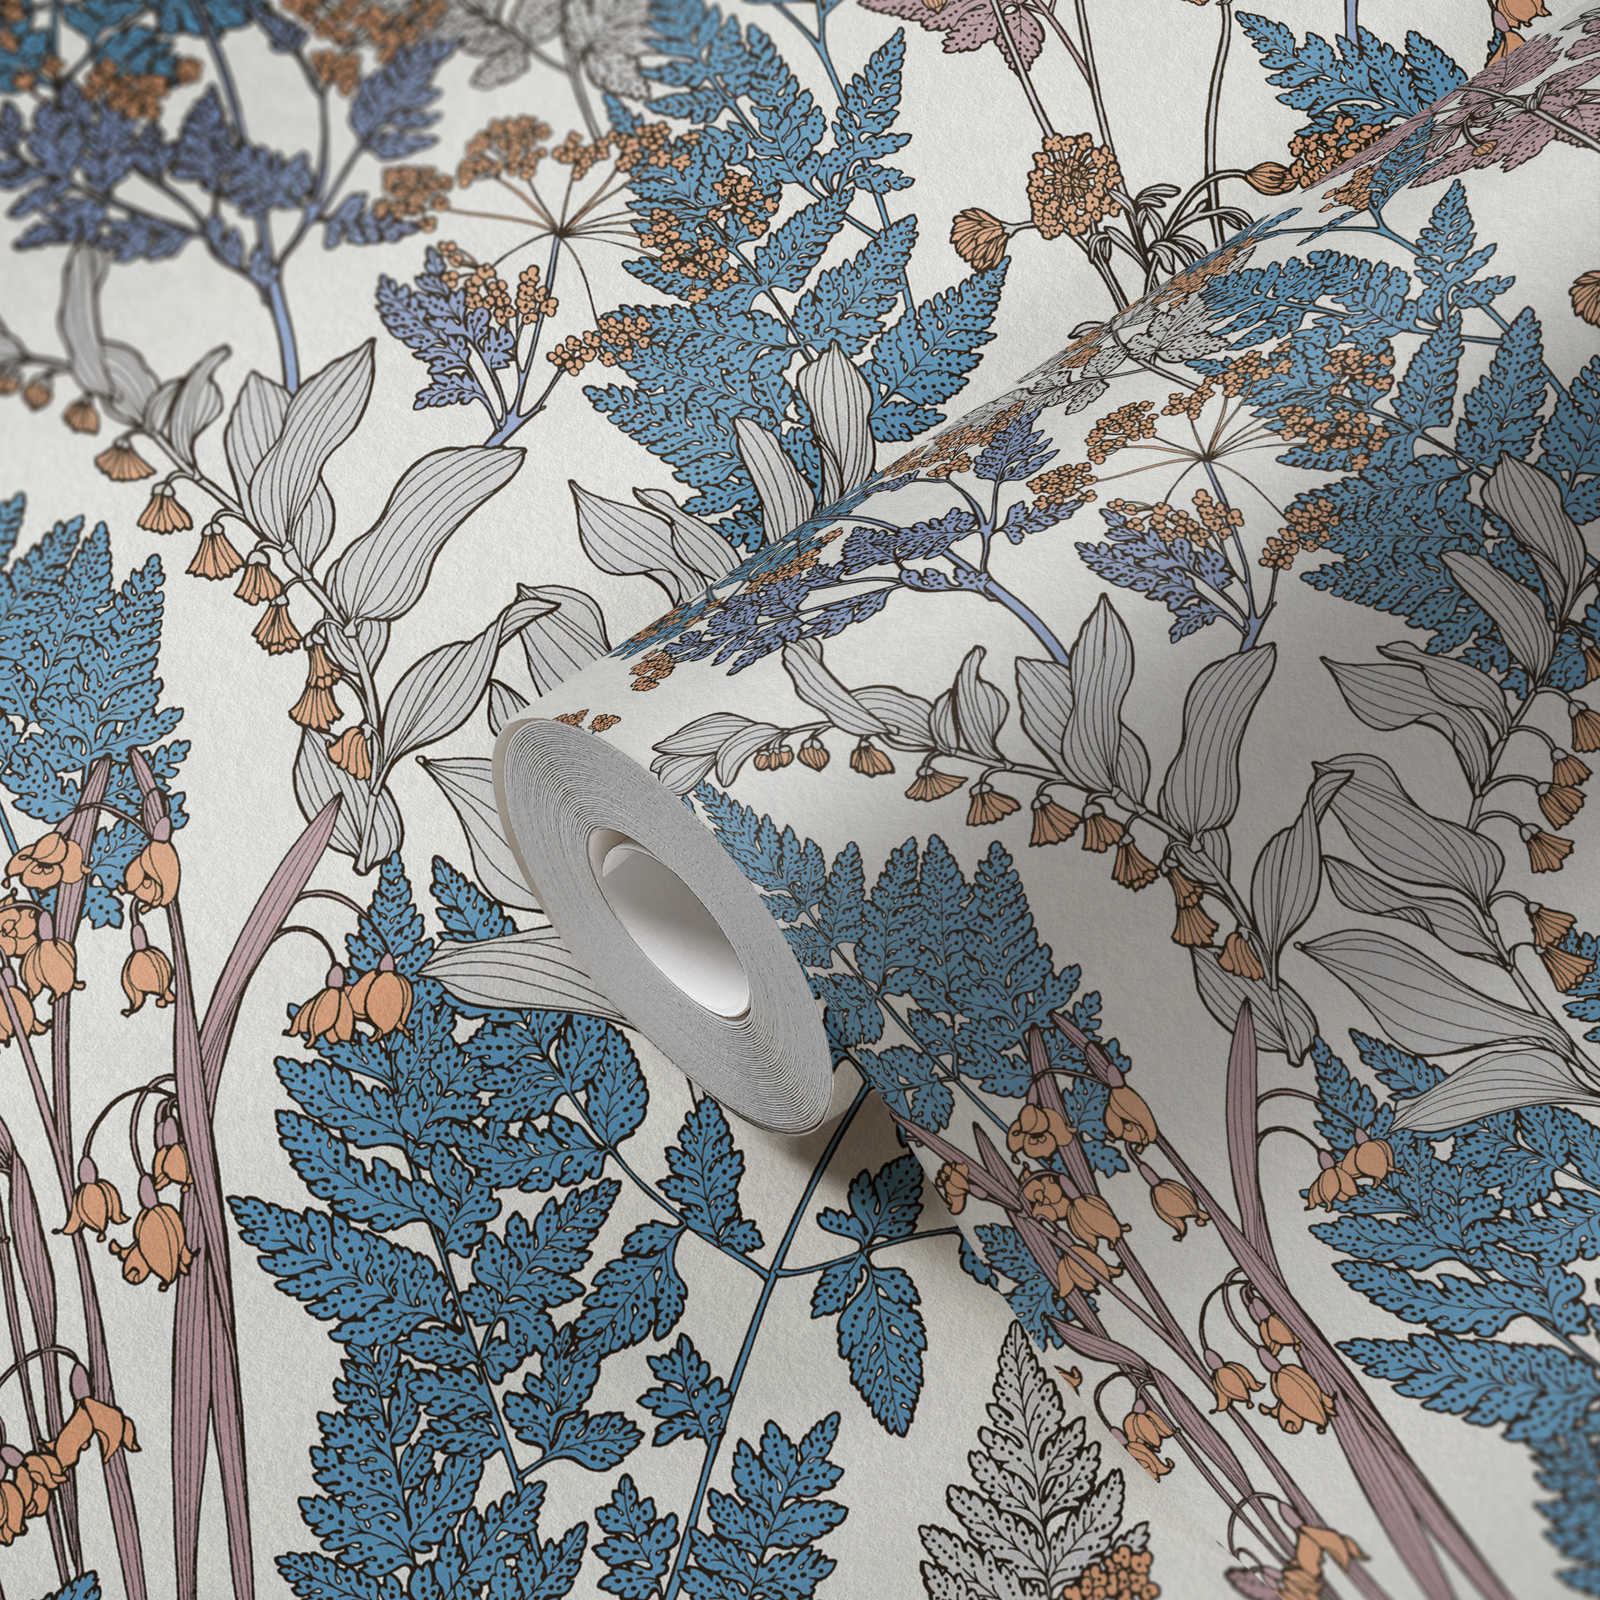             Natur Tapete Blätter & Blüten im modernen Landhaus Stil – Blau, Creme, Beige
        